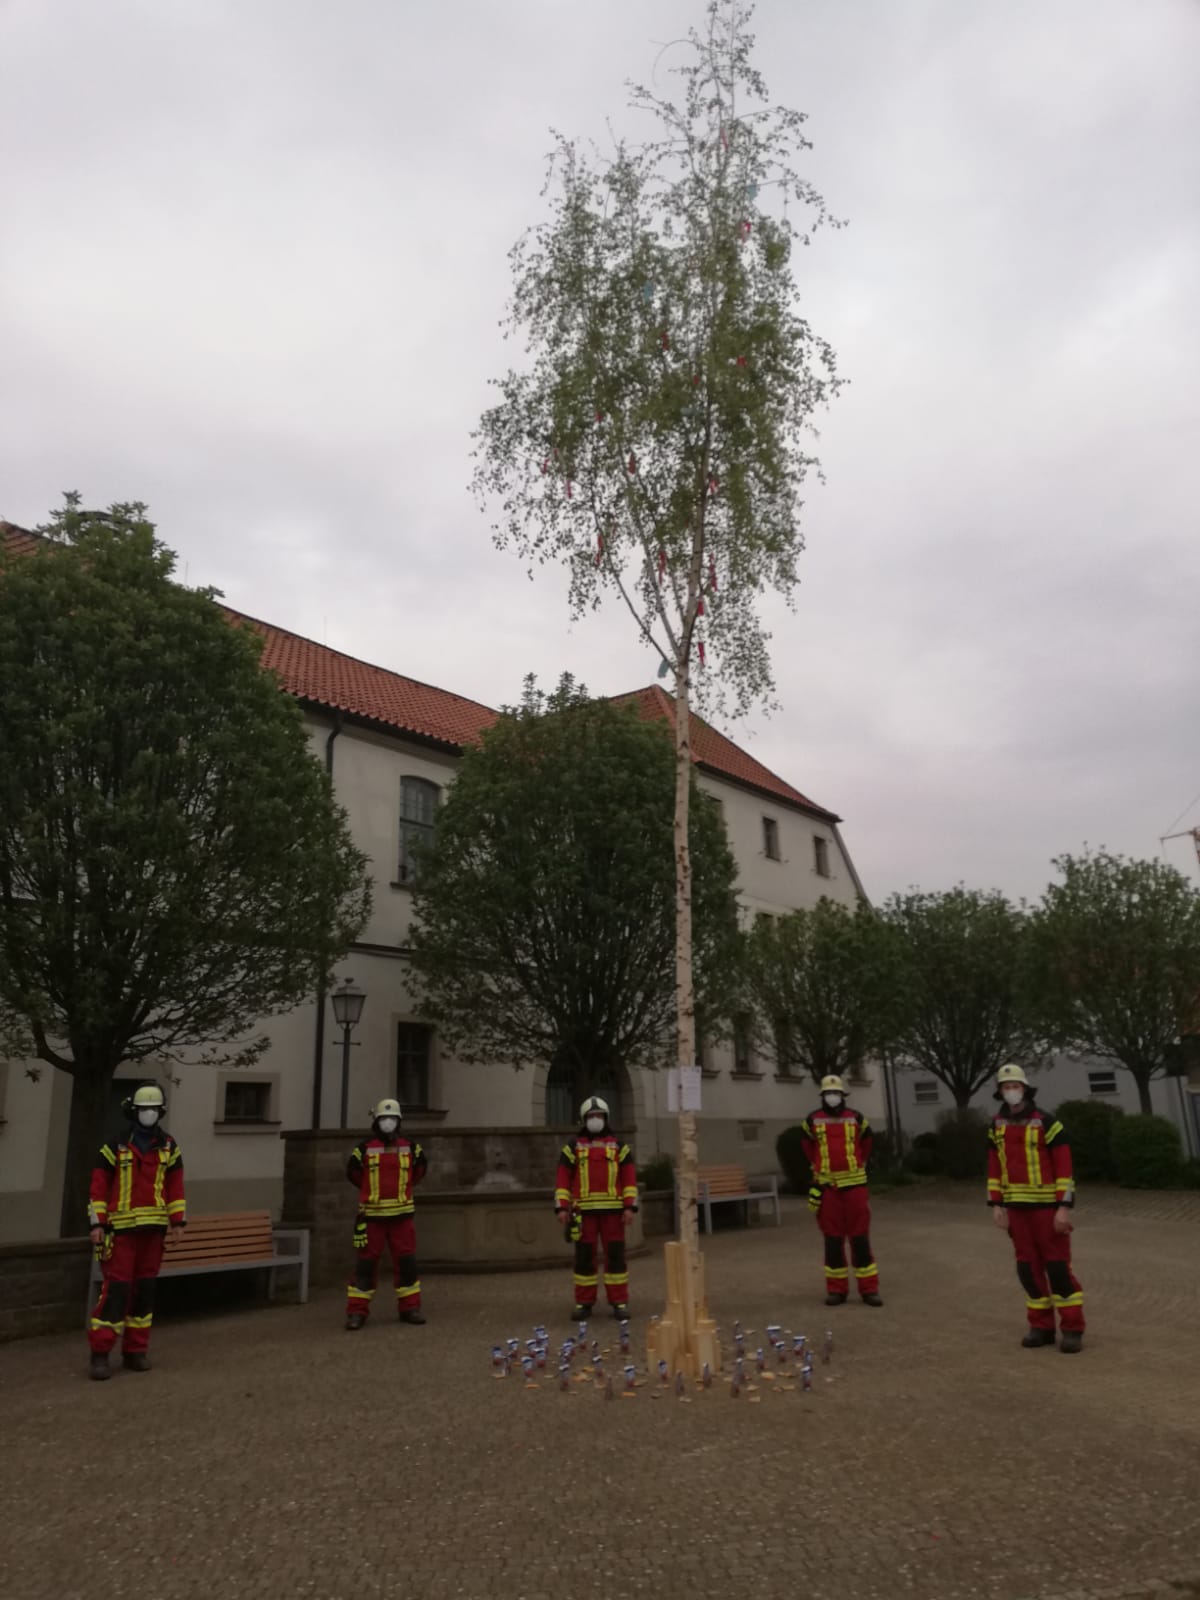 Neues Gasmessgerät » Feuerwehr Geldersheim